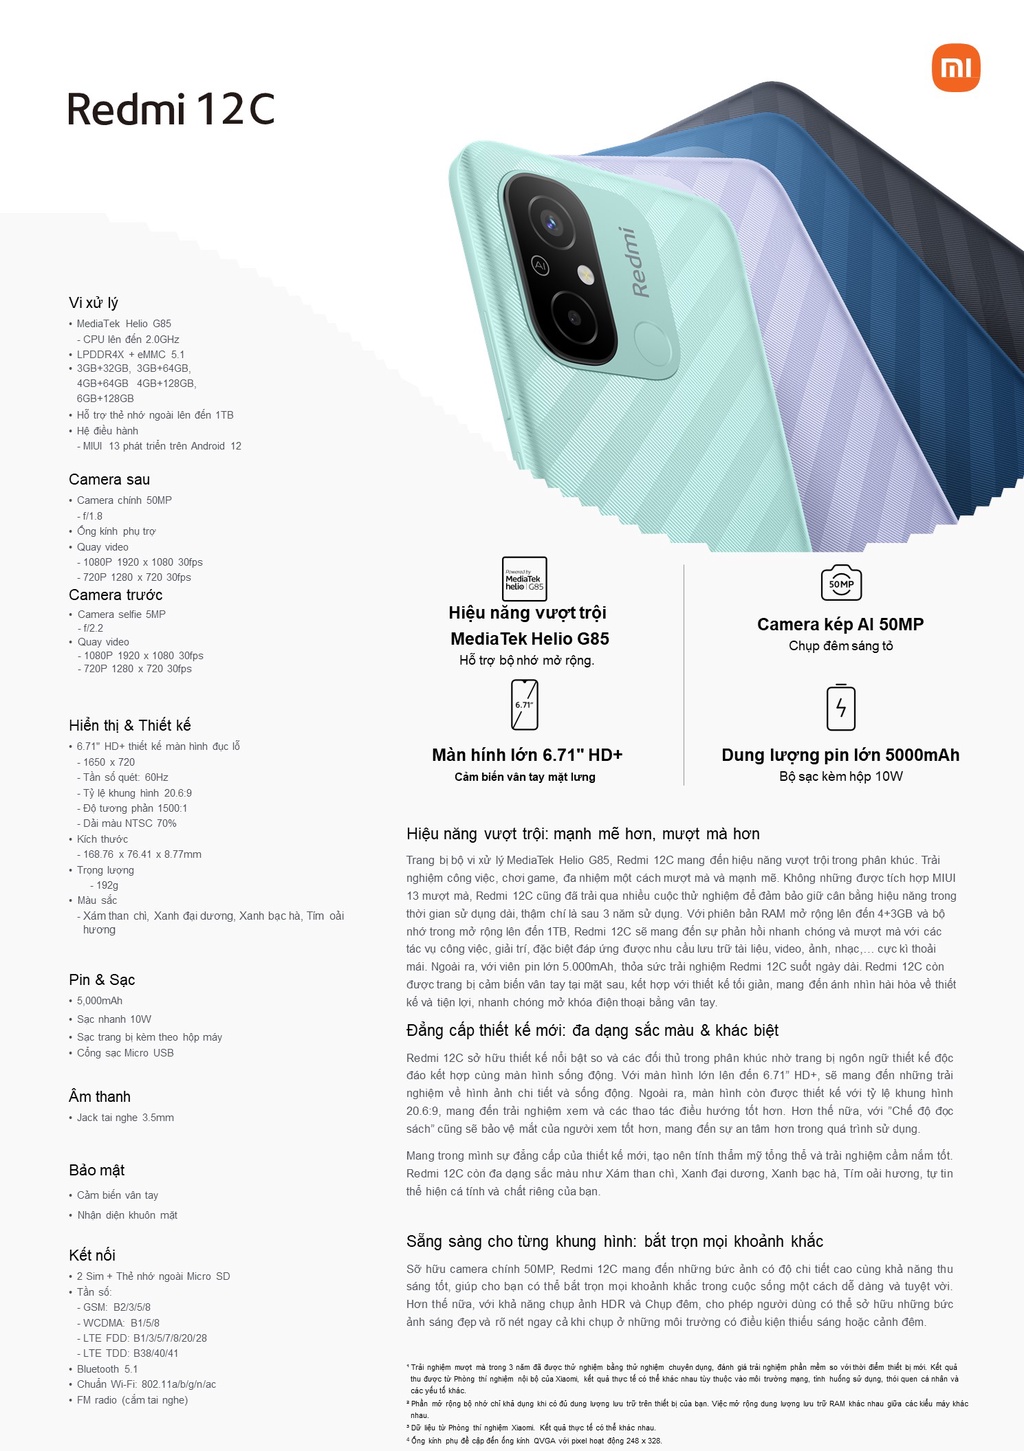 Xiaomi Redmi 12C 3GB 32GB - TechPunt